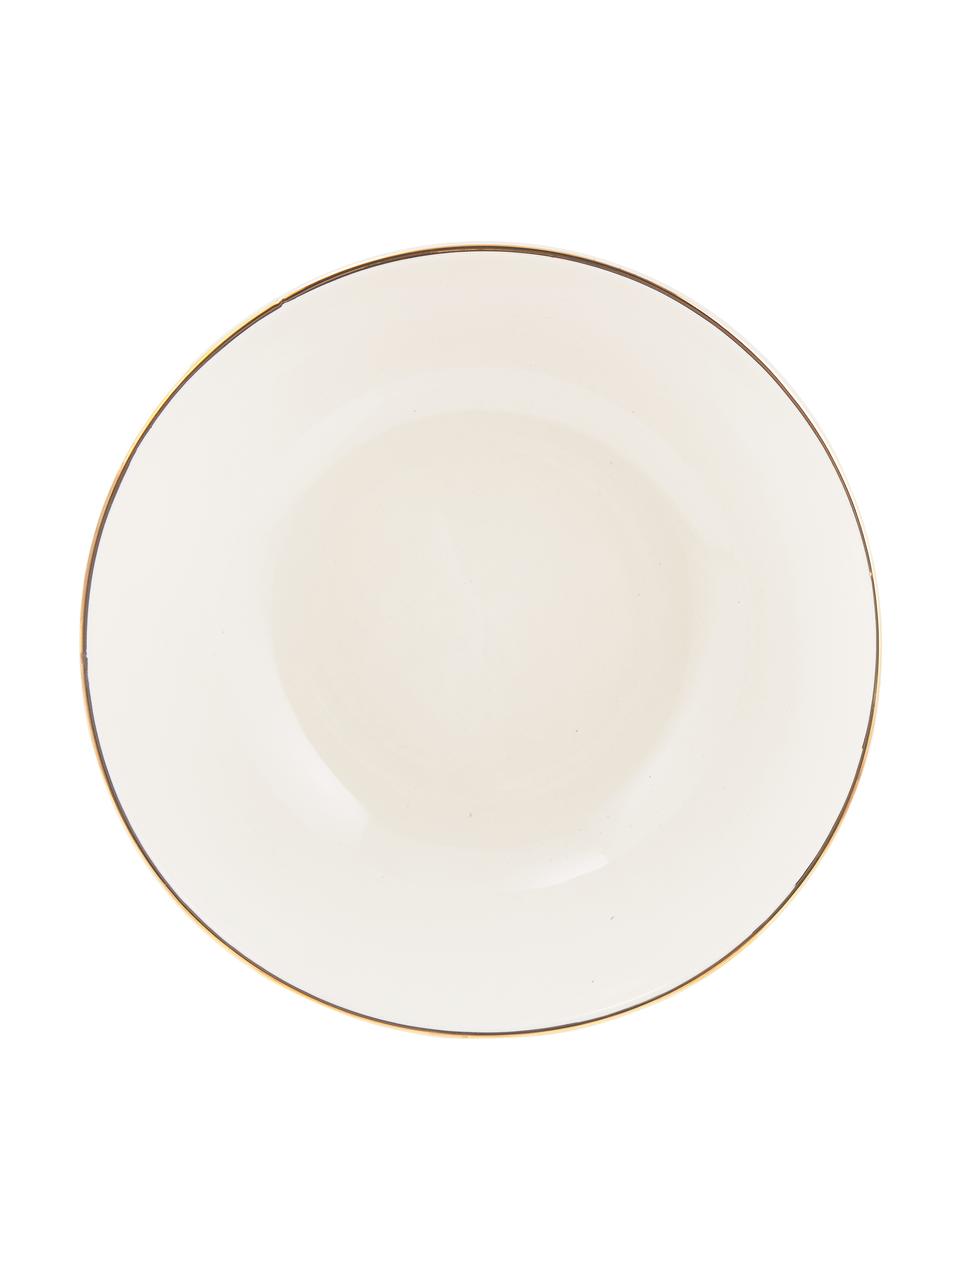 Ručně vyrobená salátová mísa se zlatým okrajem Allure, Ø 25 cm, Keramika, Bílá, zlatá, Ø 25 cm, V 8 cm